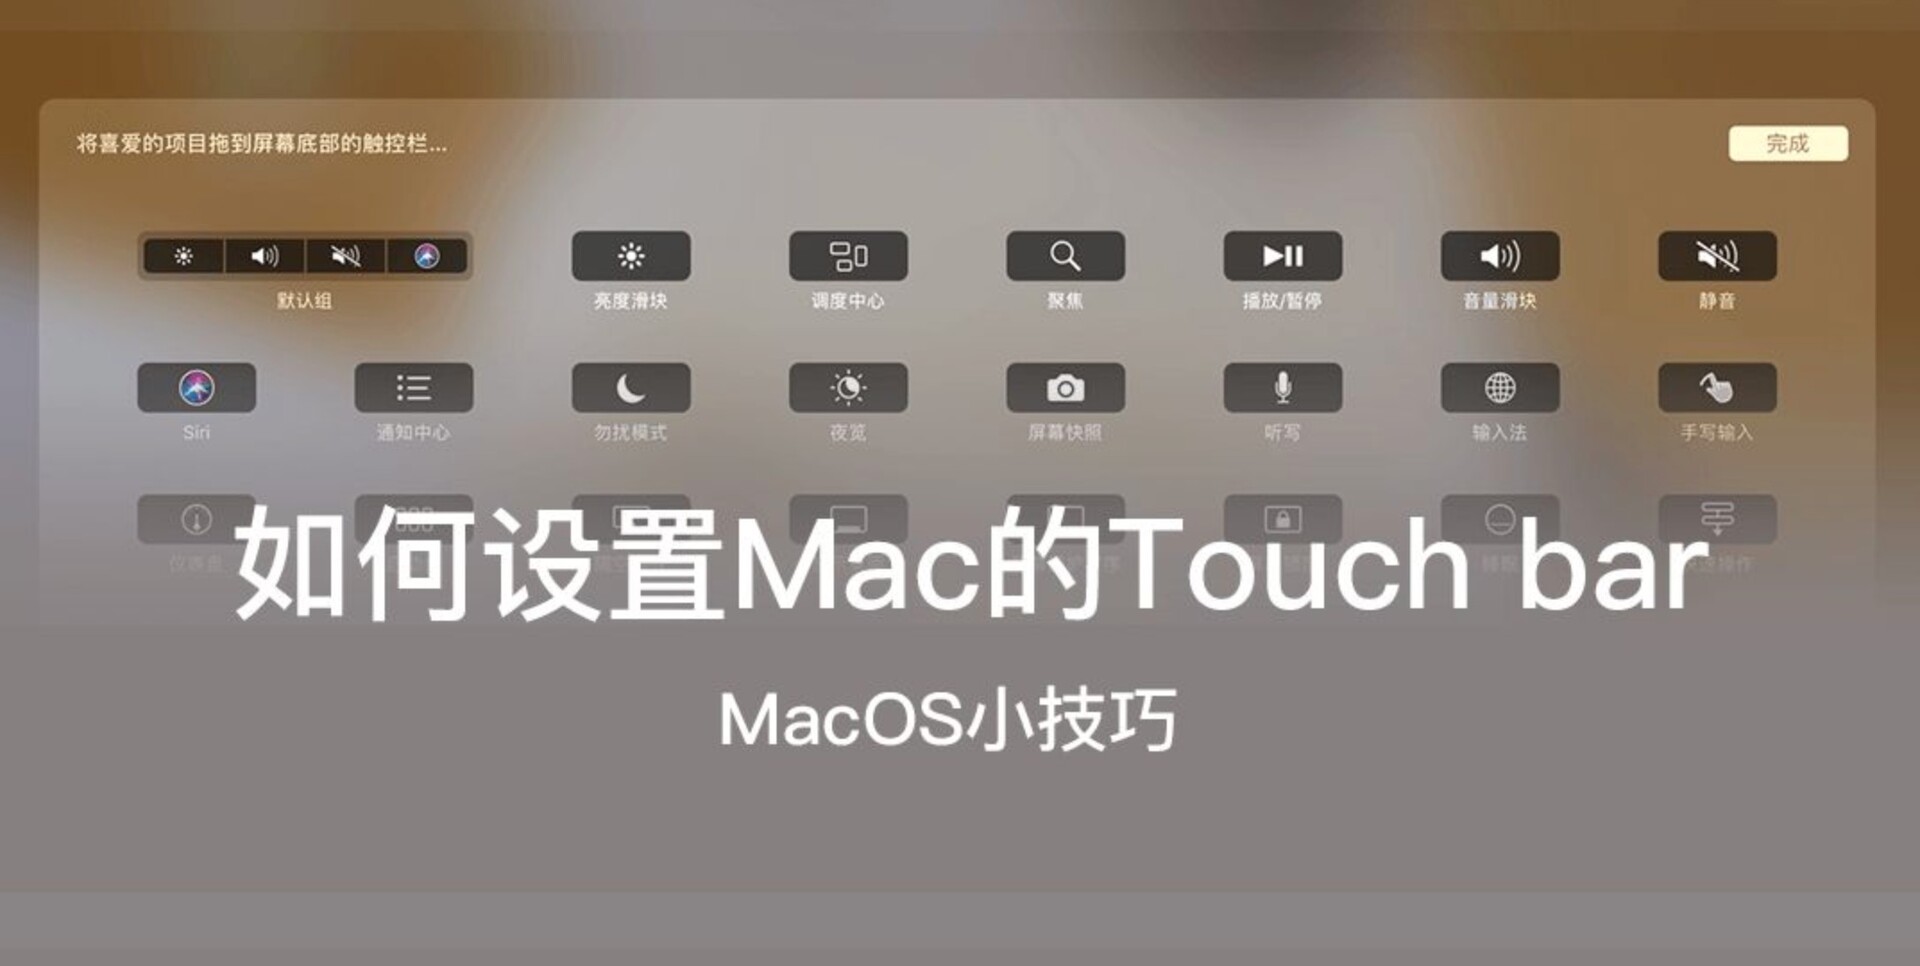 Macbook pro如何设置触控栏touch bar